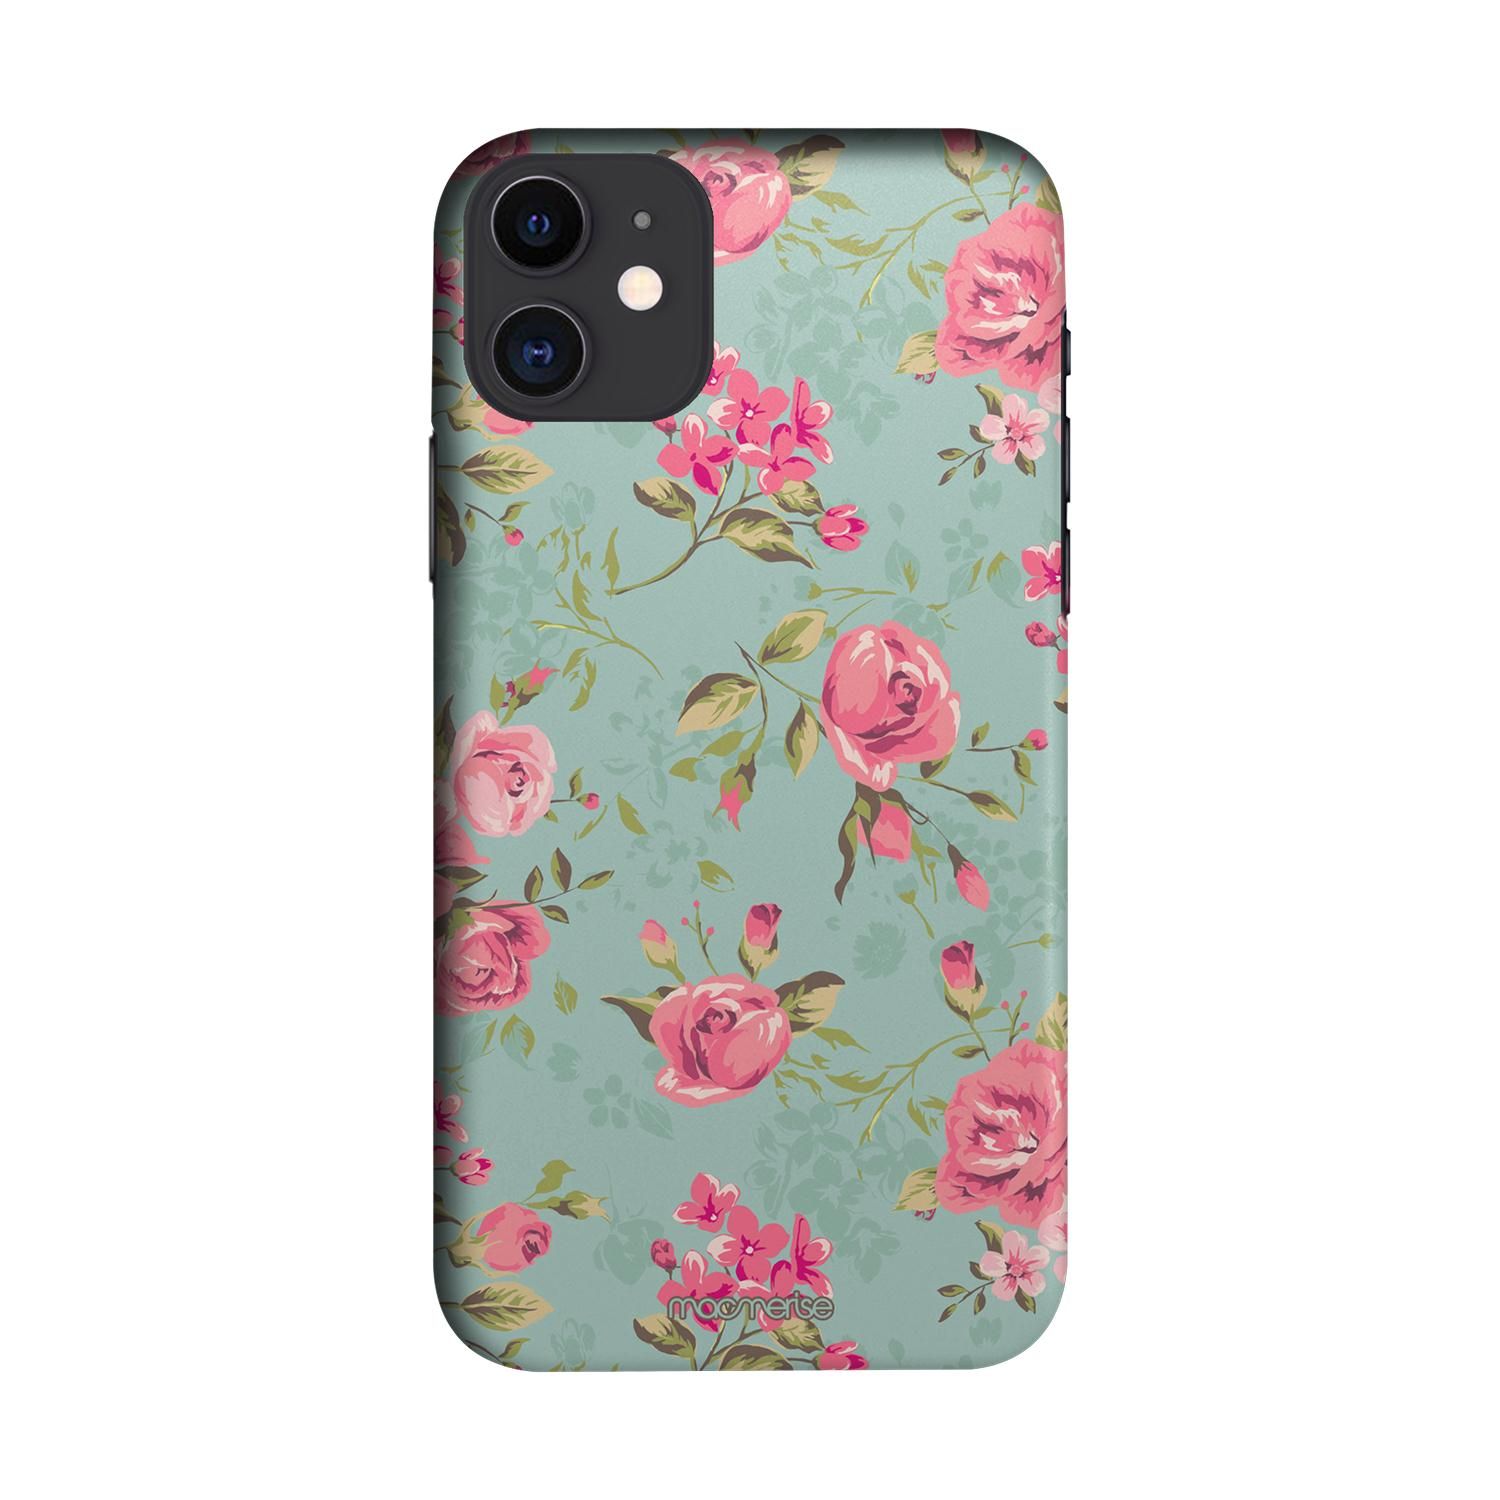 Buy Teal Pink Flowers - Sleek Phone Case for iPhone 11 Online